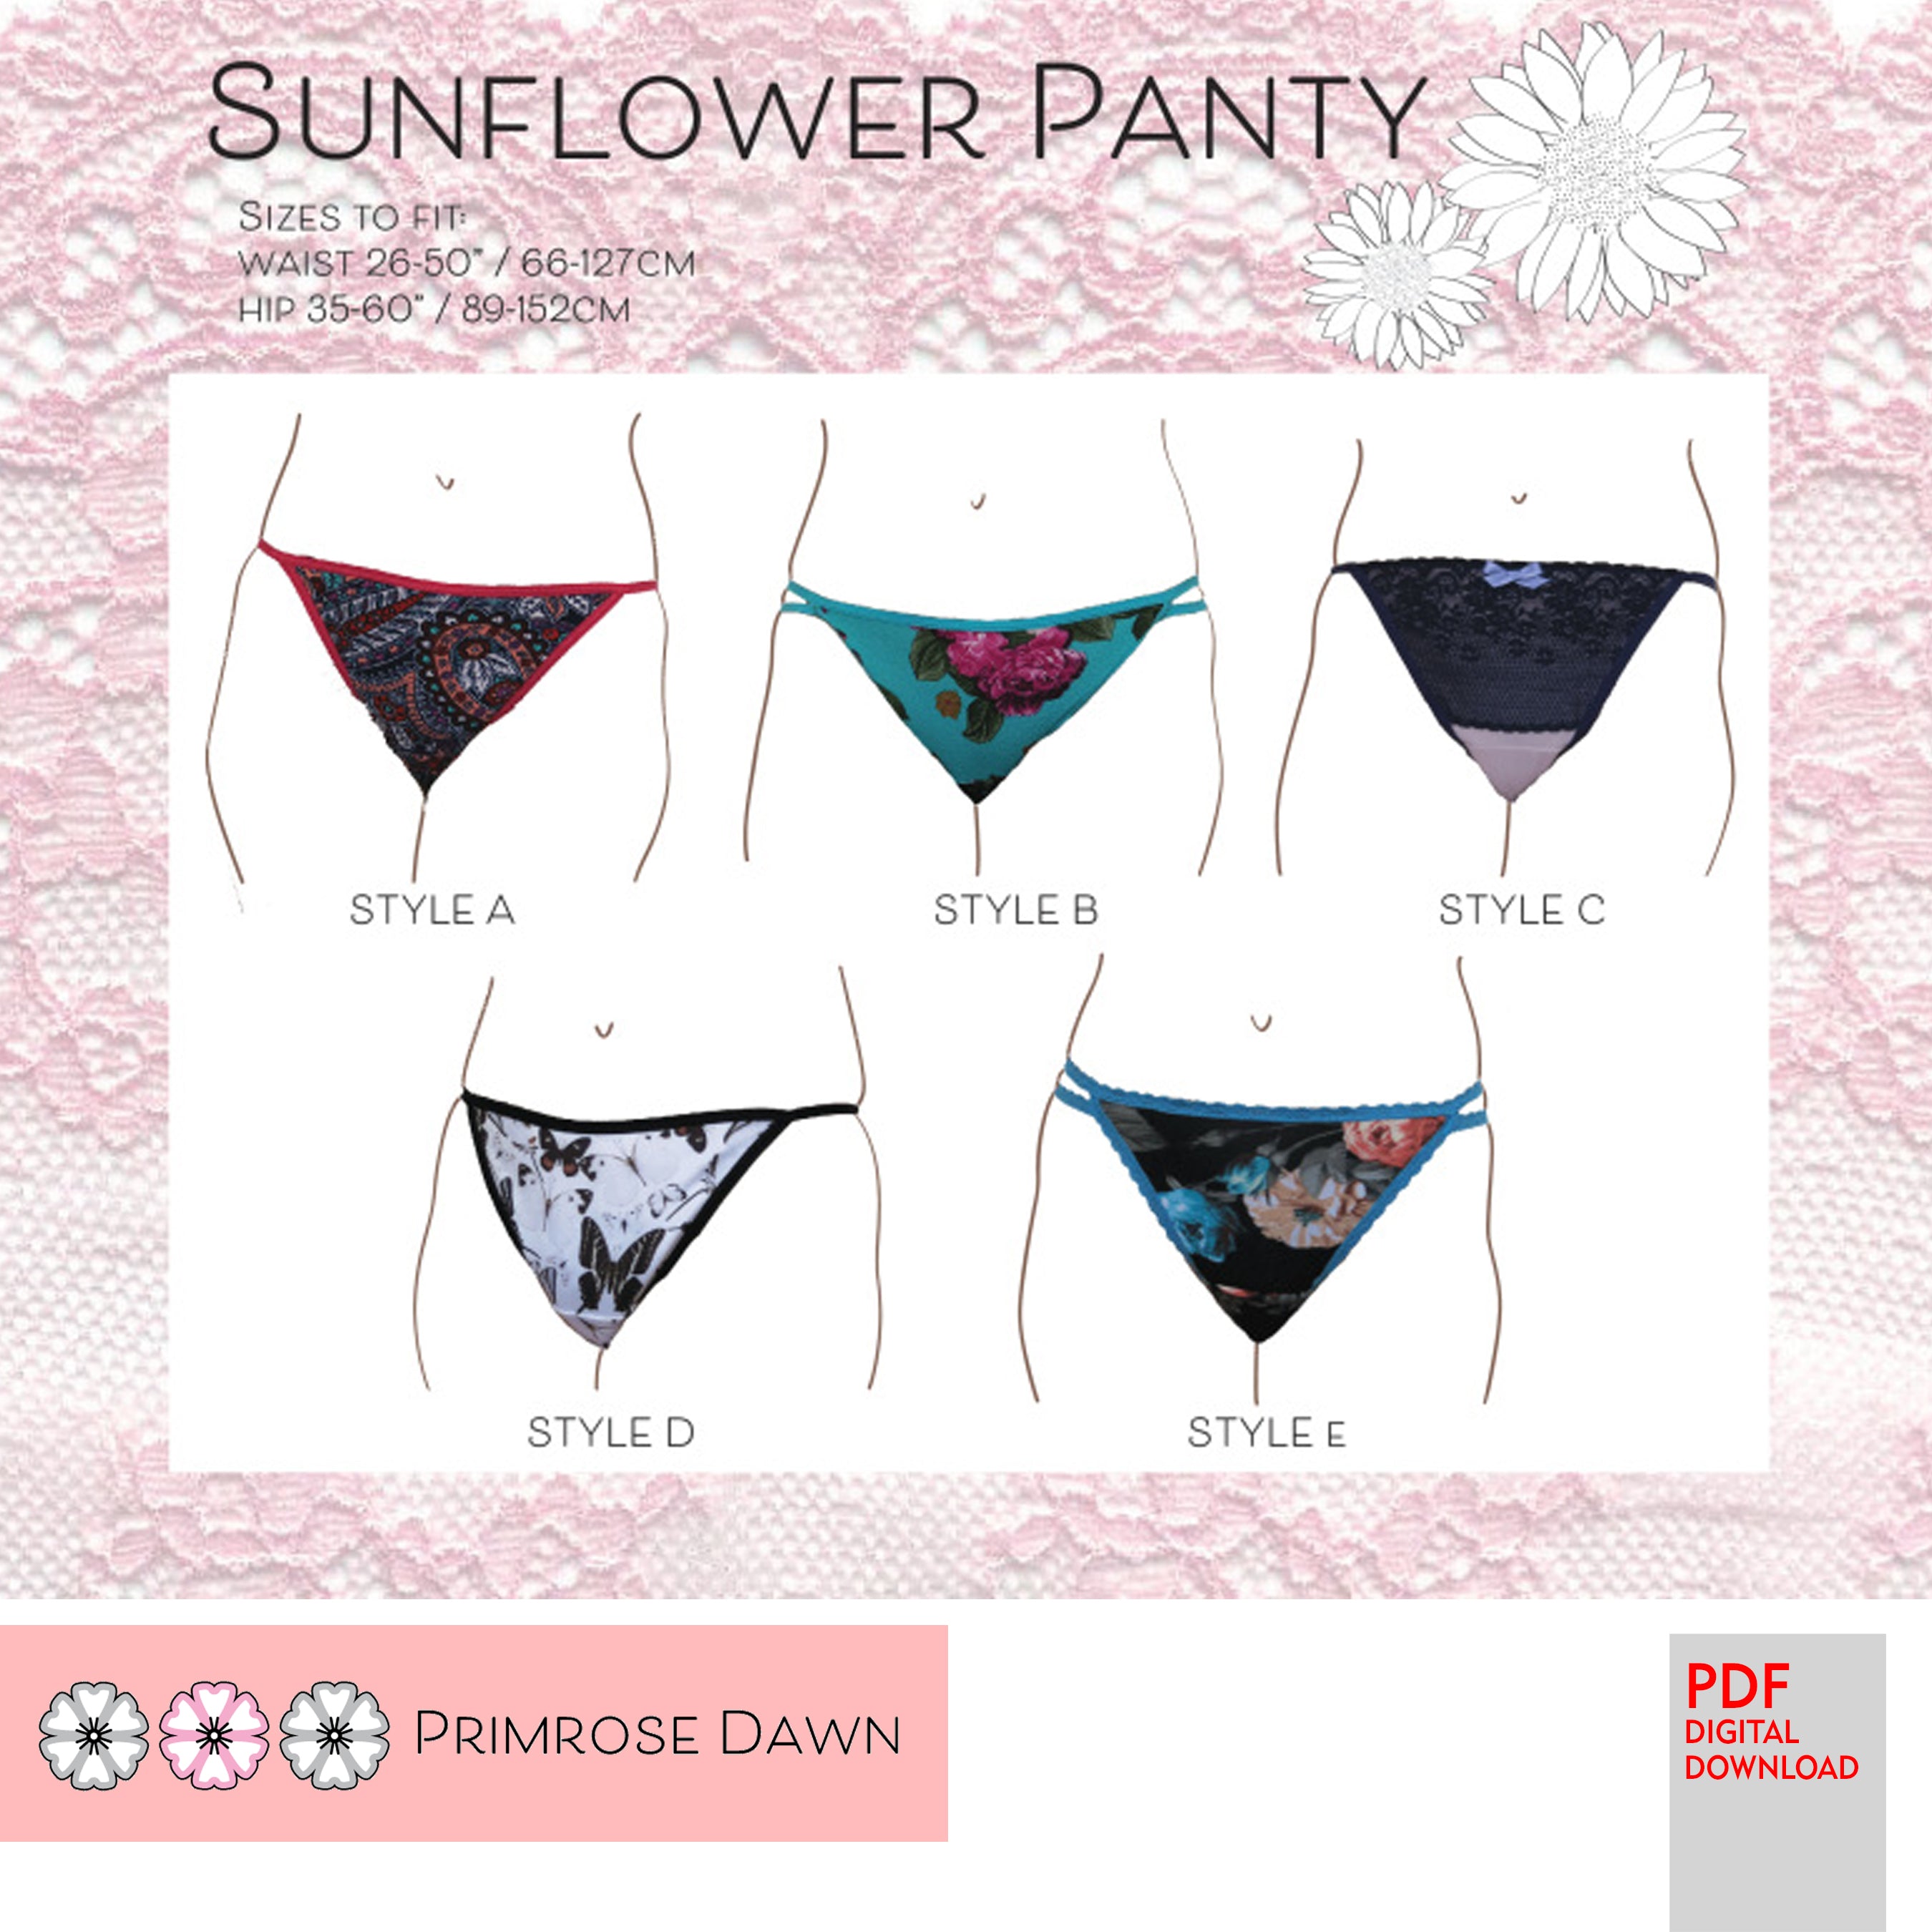 PDF Primrose Dawn Sewing Pattern- Sunflower Panty